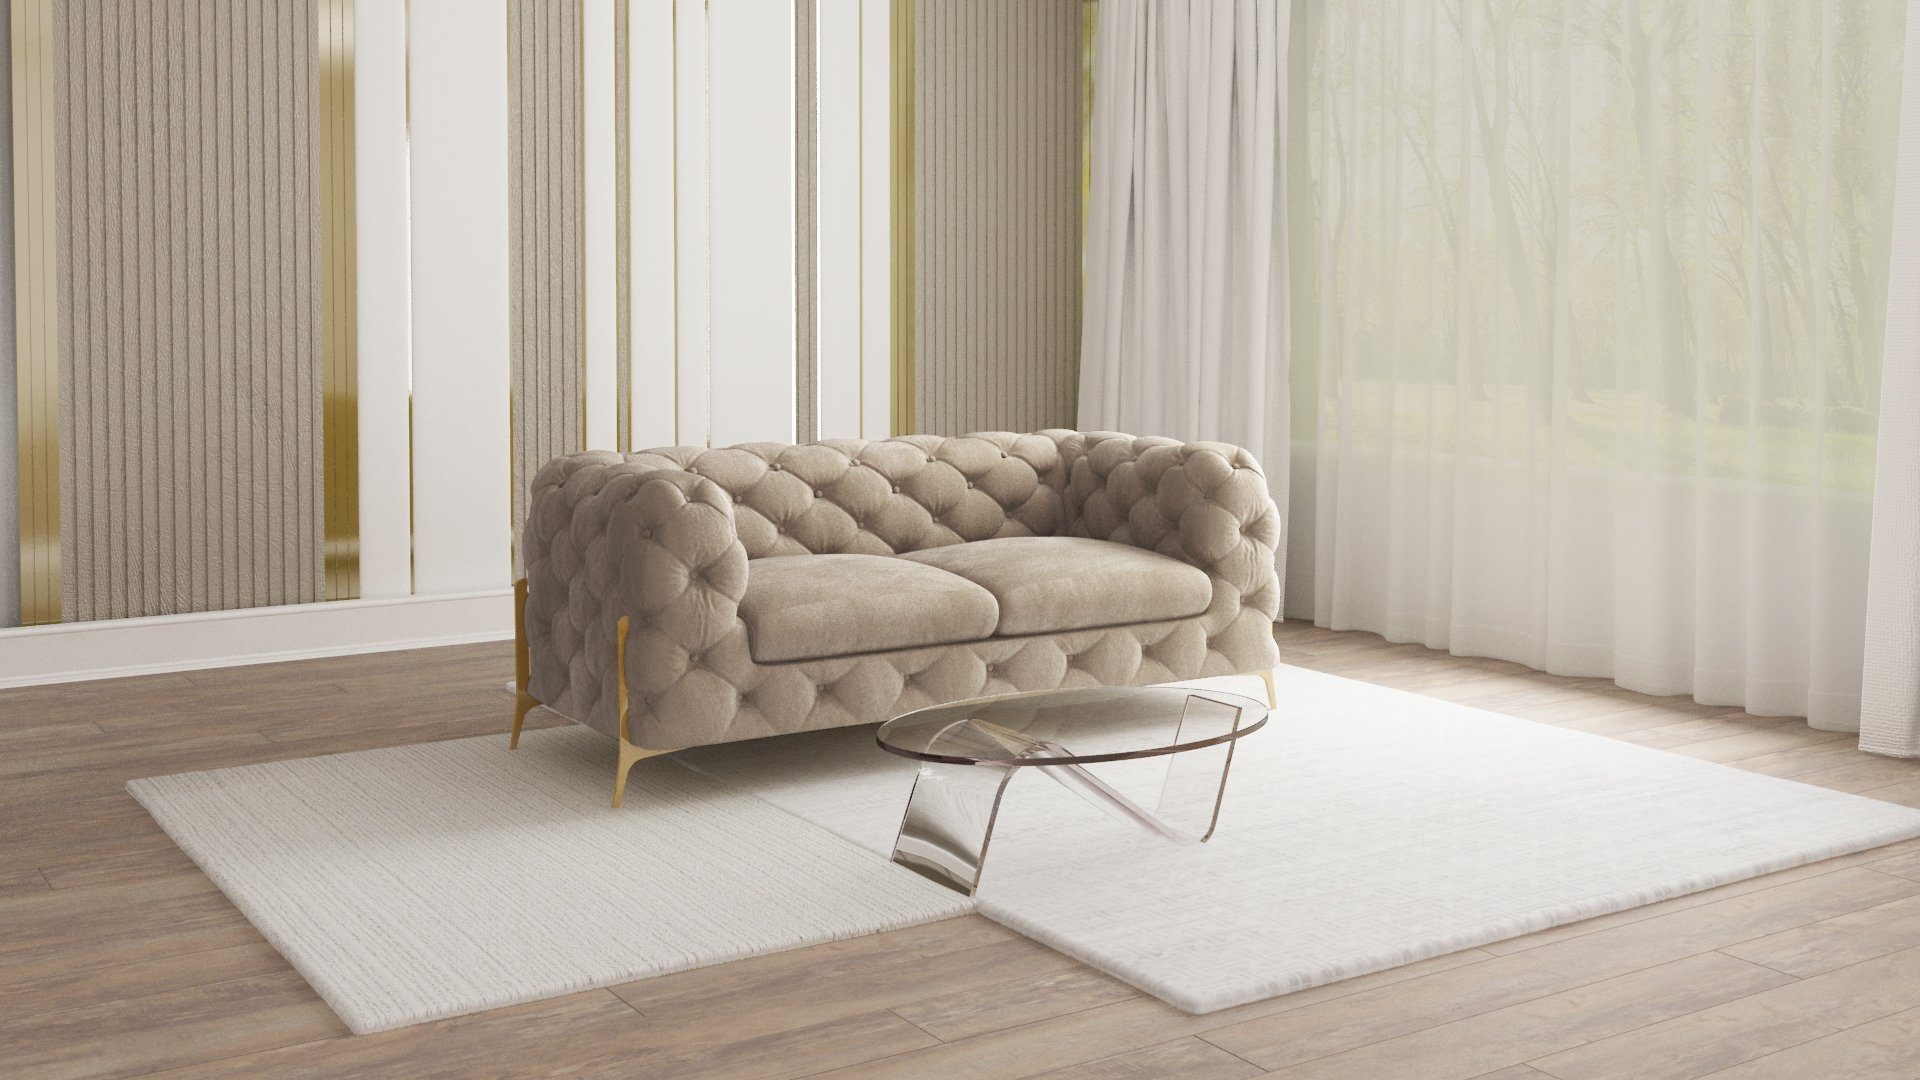 S-Style Мебель 2-Sitzer Ashley Chesterfield Sofa mit Goldene Metall Füßen, mit Wellenfederung